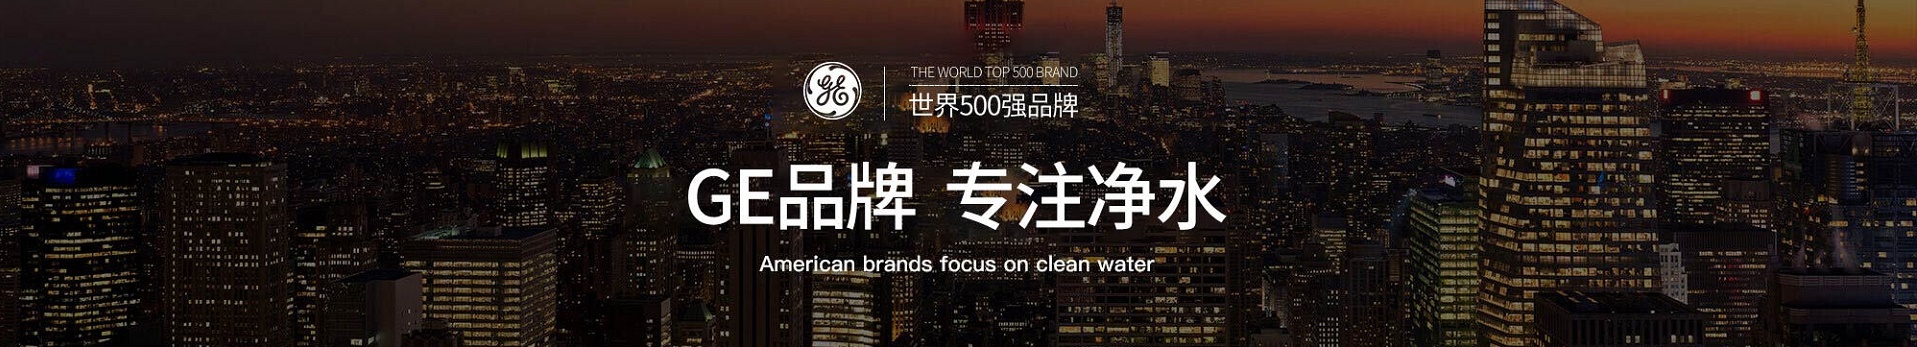 中国最高档国产第一品牌反渗透净水机,究竟多优